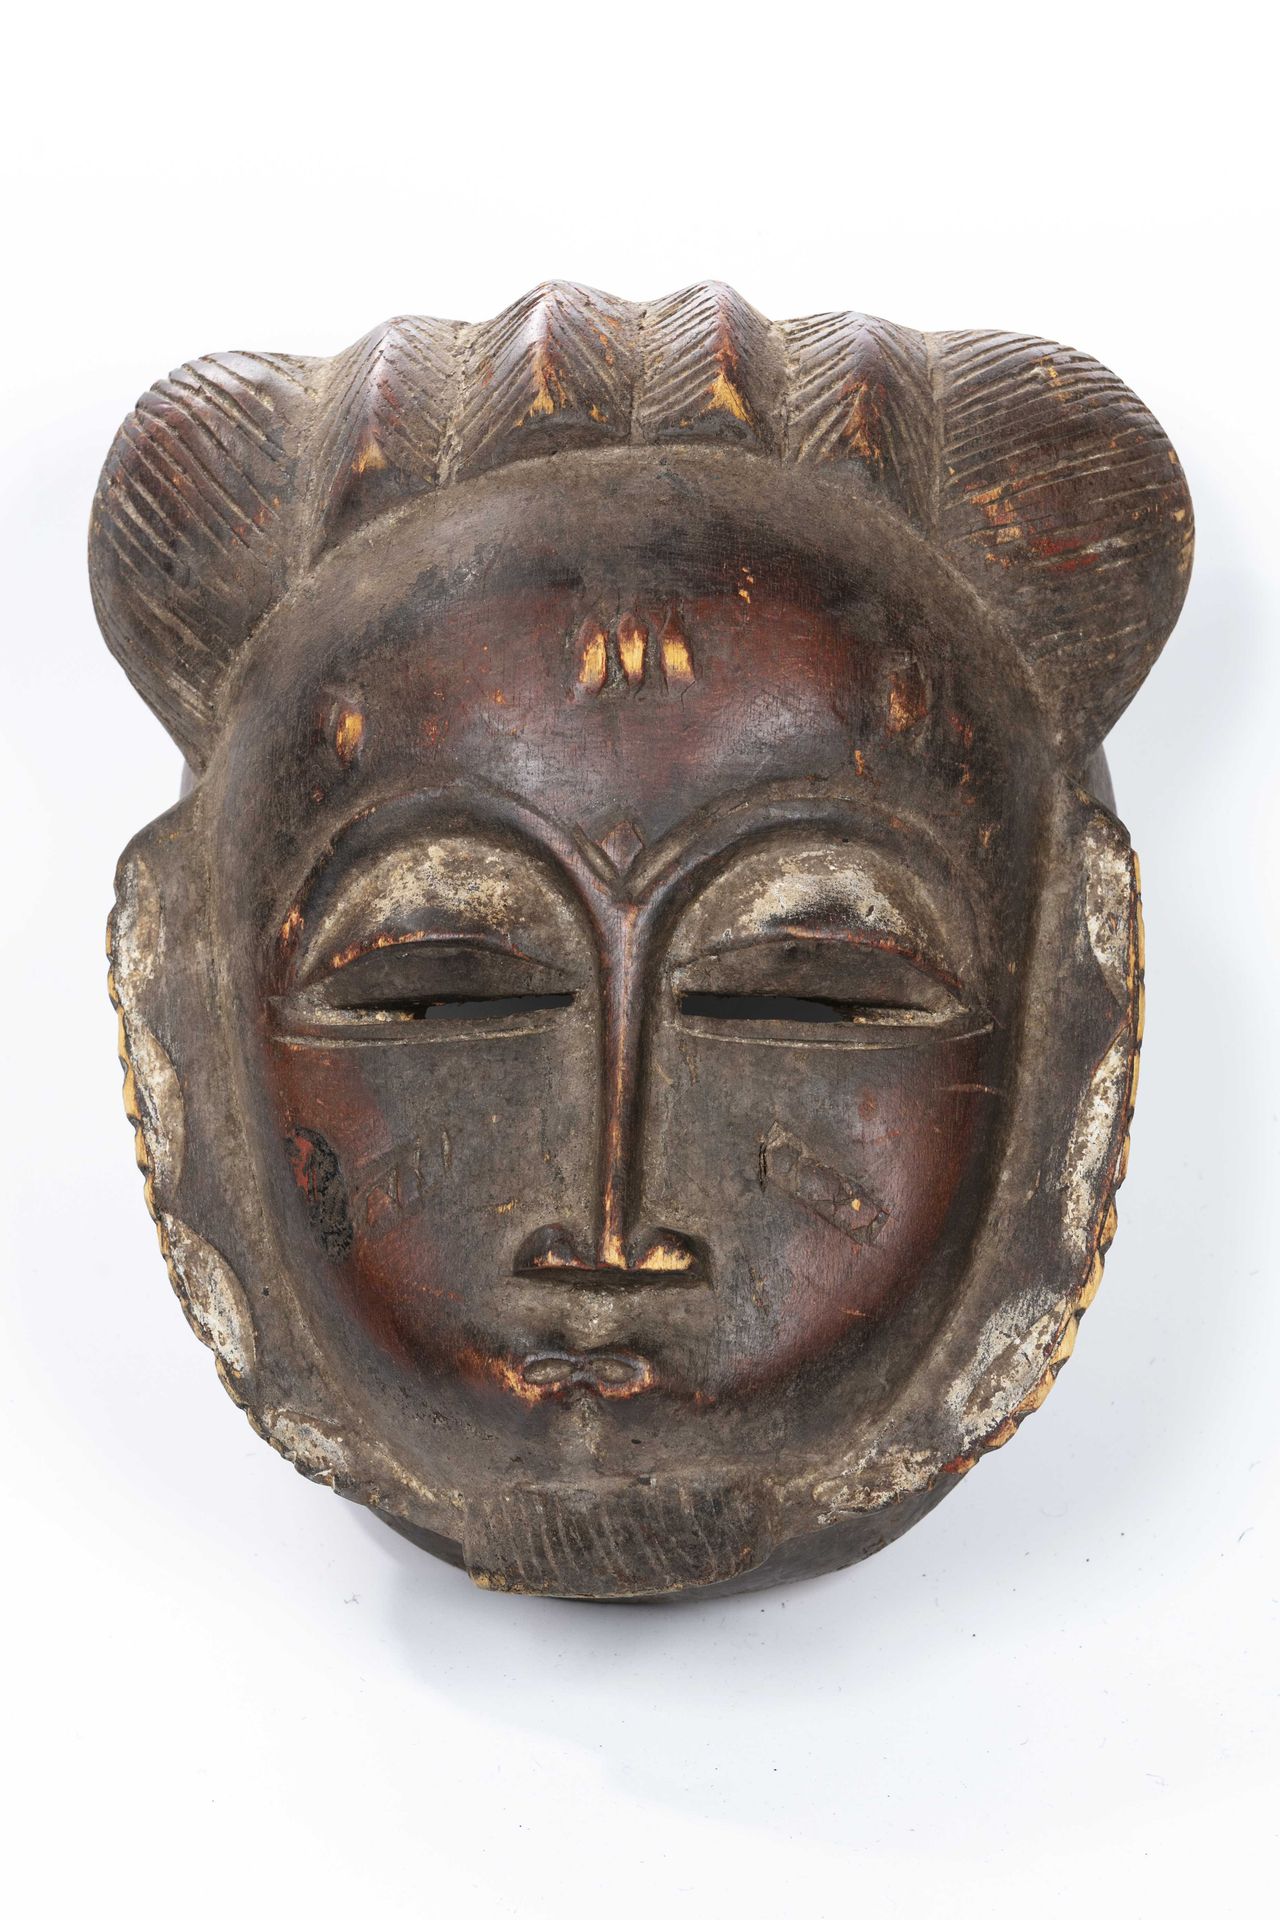 Null Maschera in stile Baule, Costa d'Avorio 
Legno 
Altezza: 29 cm 
Volto tonde&hellip;